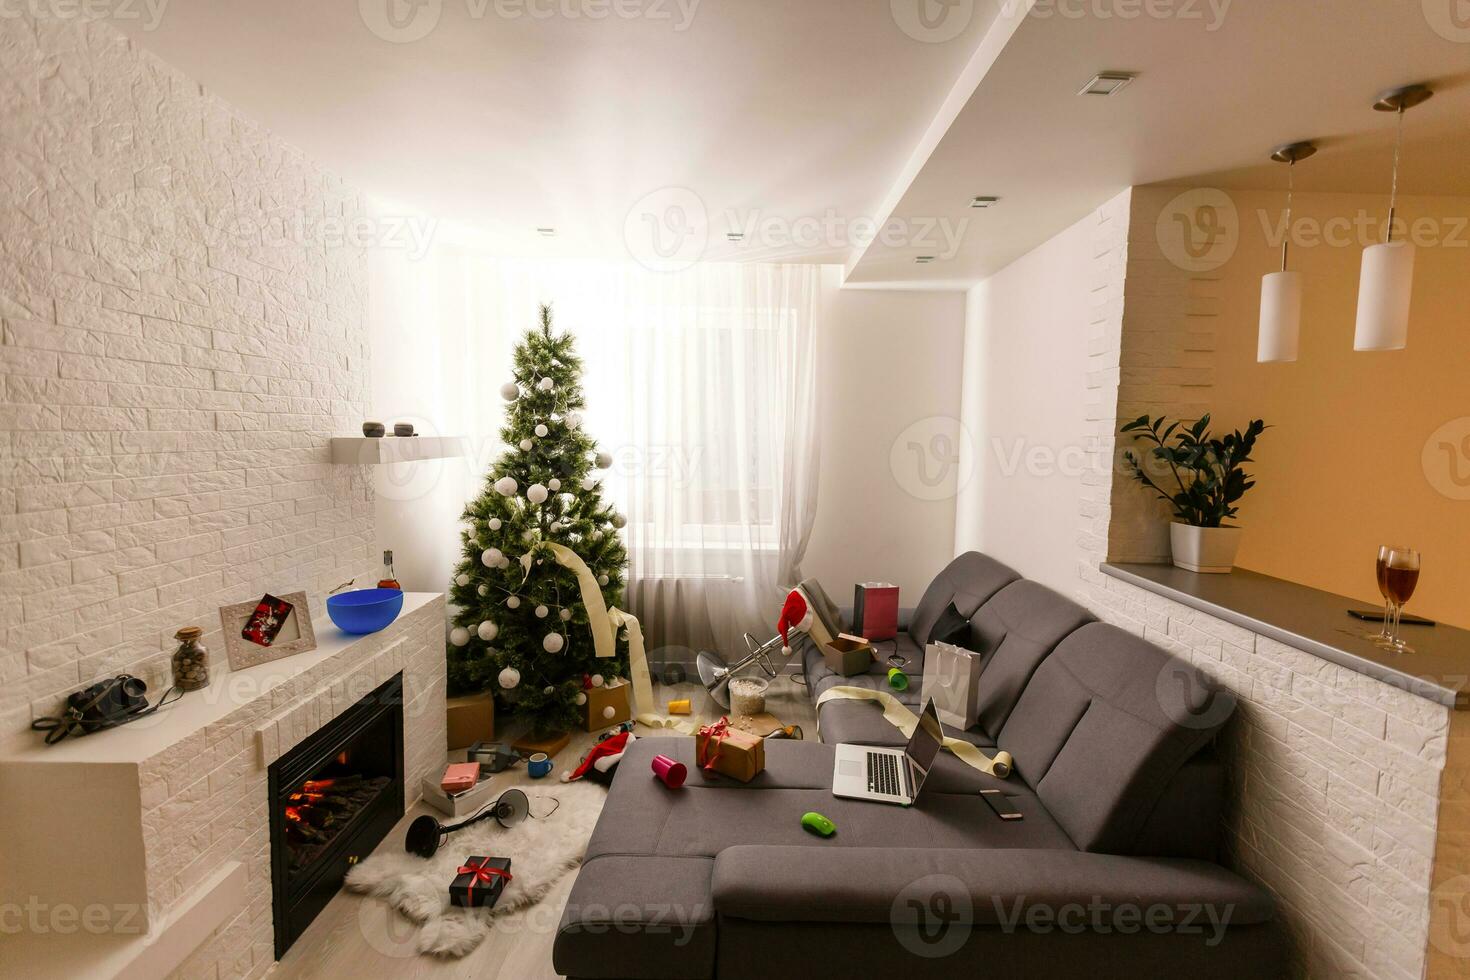 bagunçado vivo quarto interior com Natal árvore. caos depois de festa foto